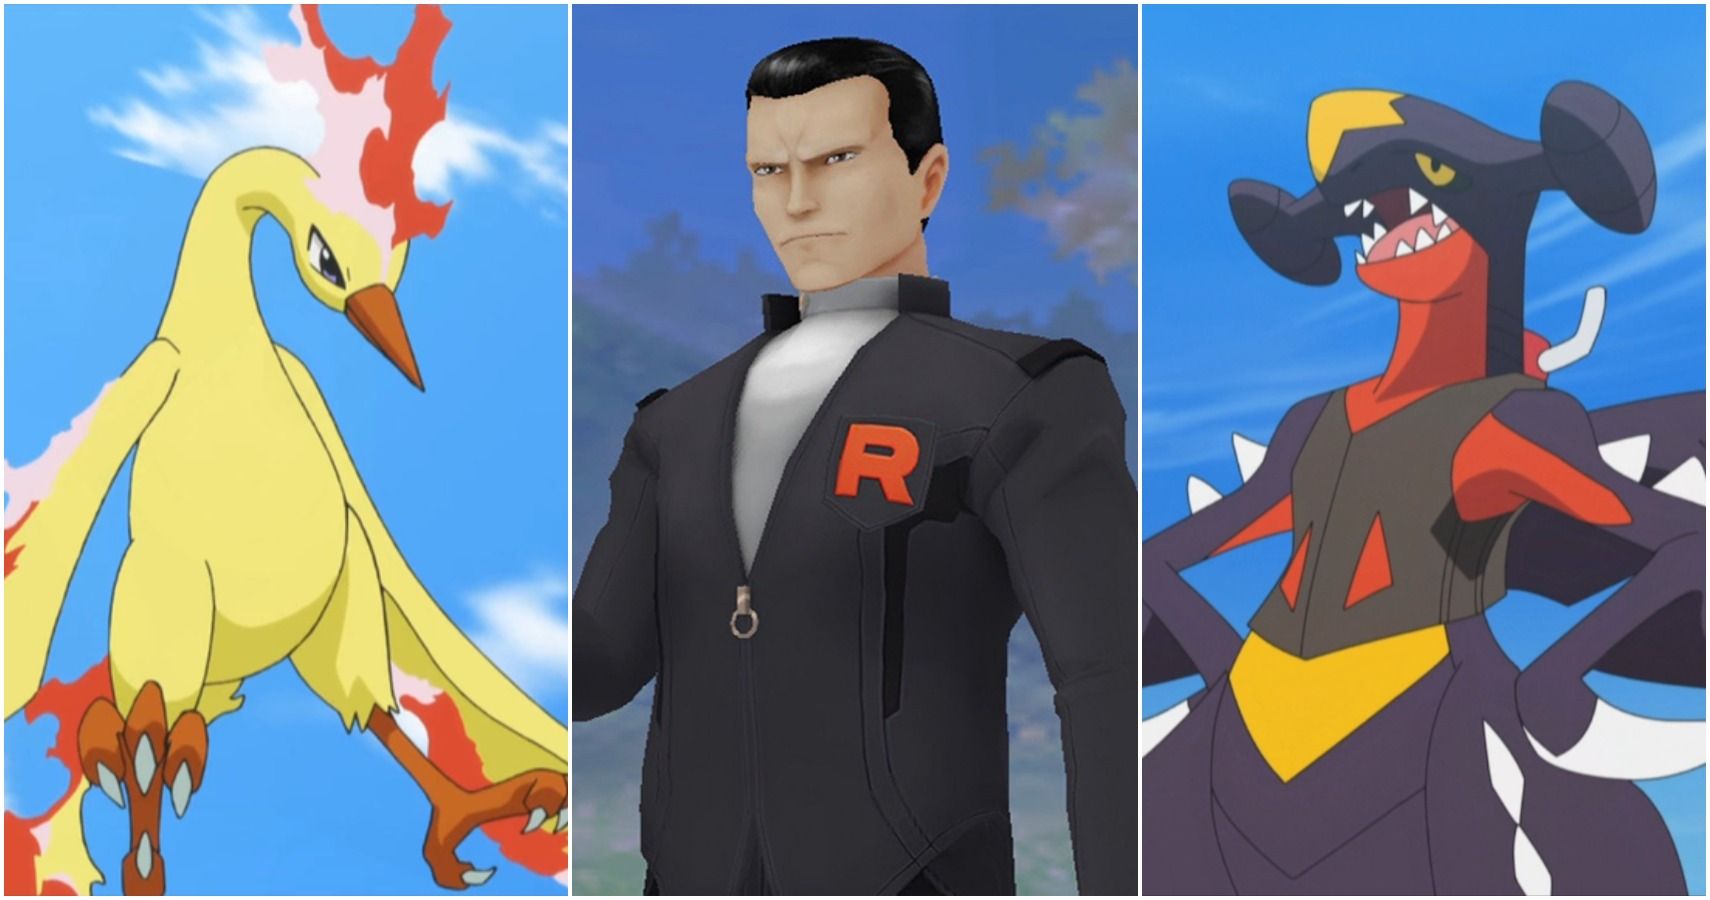 Pokémon GO: O Pokémon mais forte usado por Giovanni